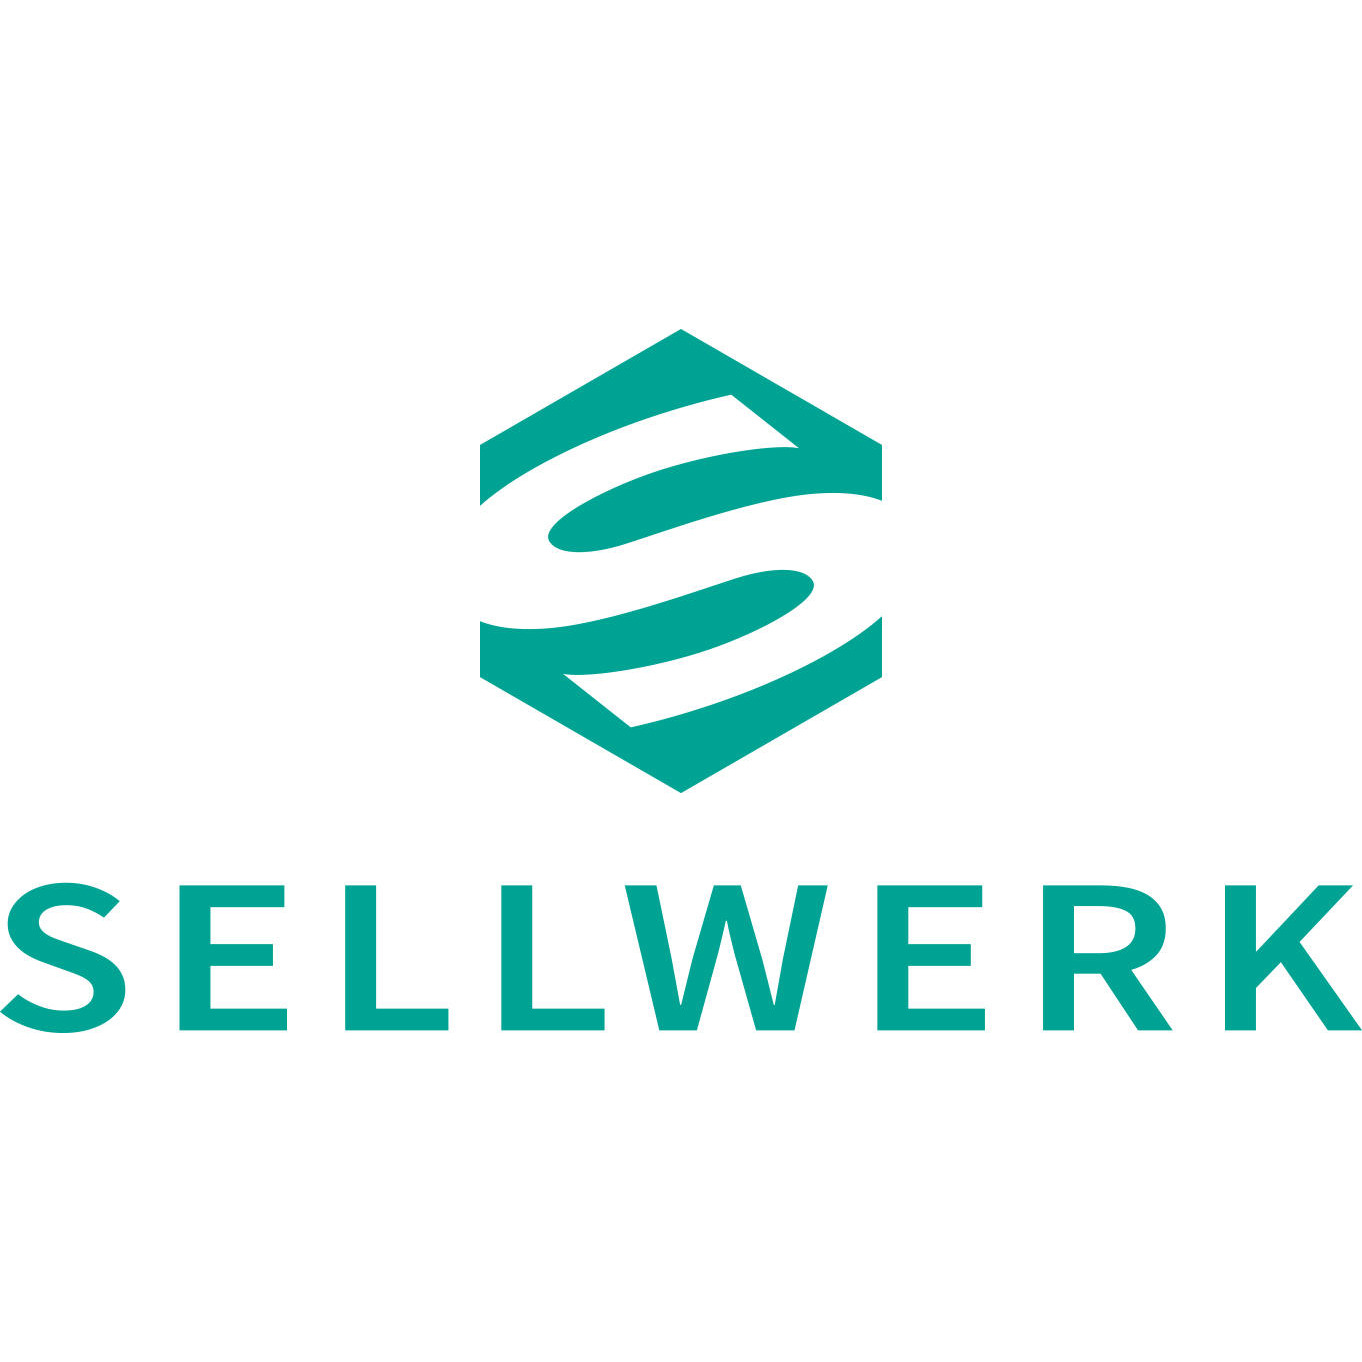 SELLWERK - Düsseldorf, Nordrhein-Westfalen in Düsseldorf - Logo